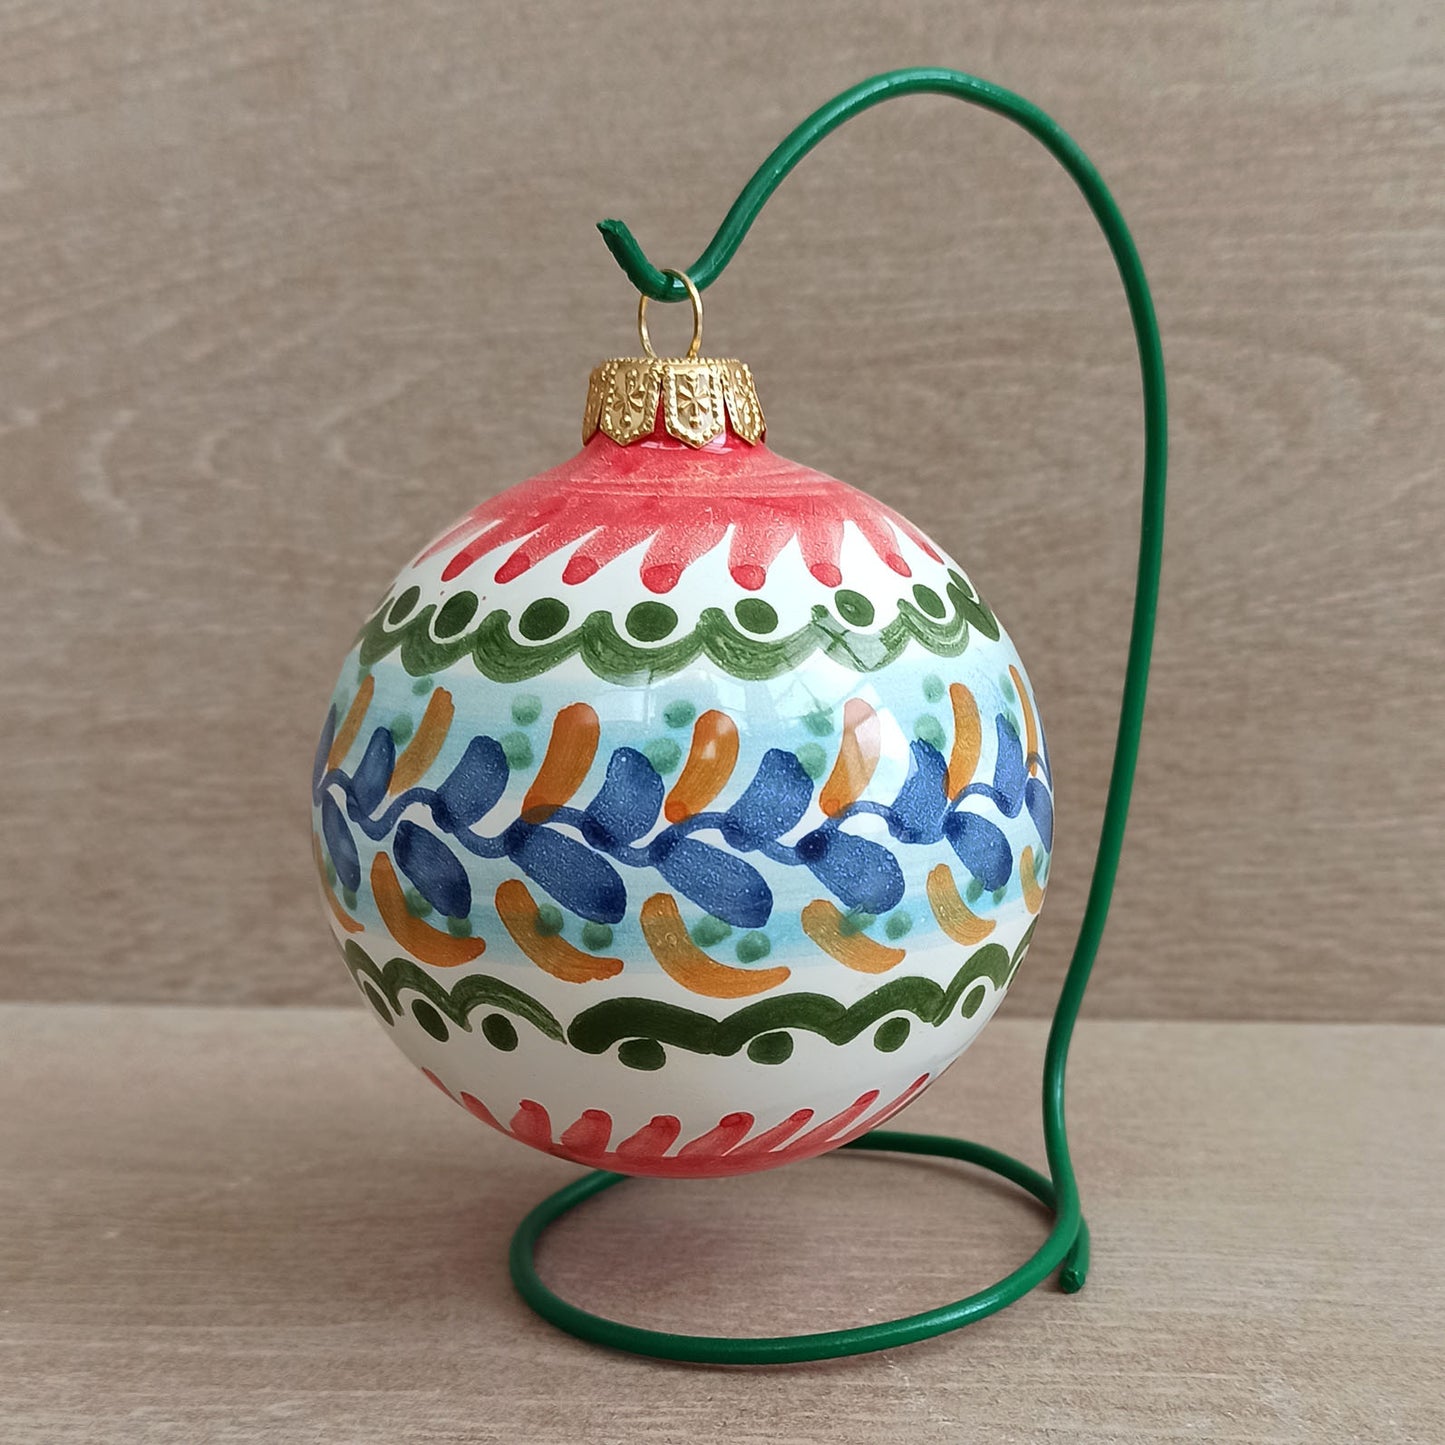 Pallina di Natale in ceramica - CRC Artigian Design